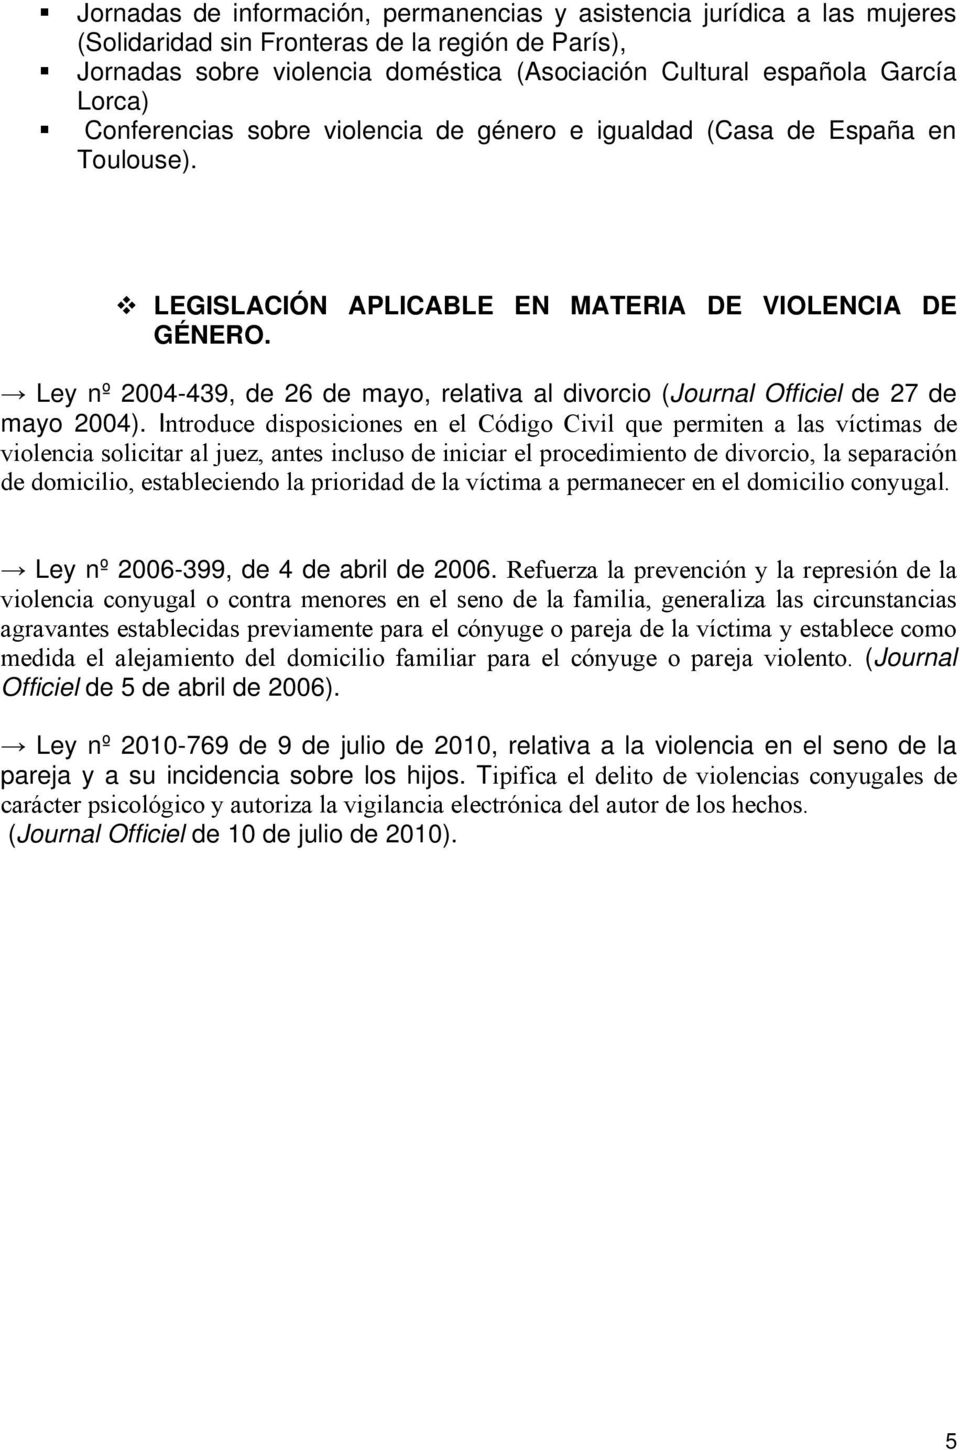 Ley nº 2004-439, de 26 de mayo, relativa al divorcio (Journal Officiel de 27 de mayo 2004).